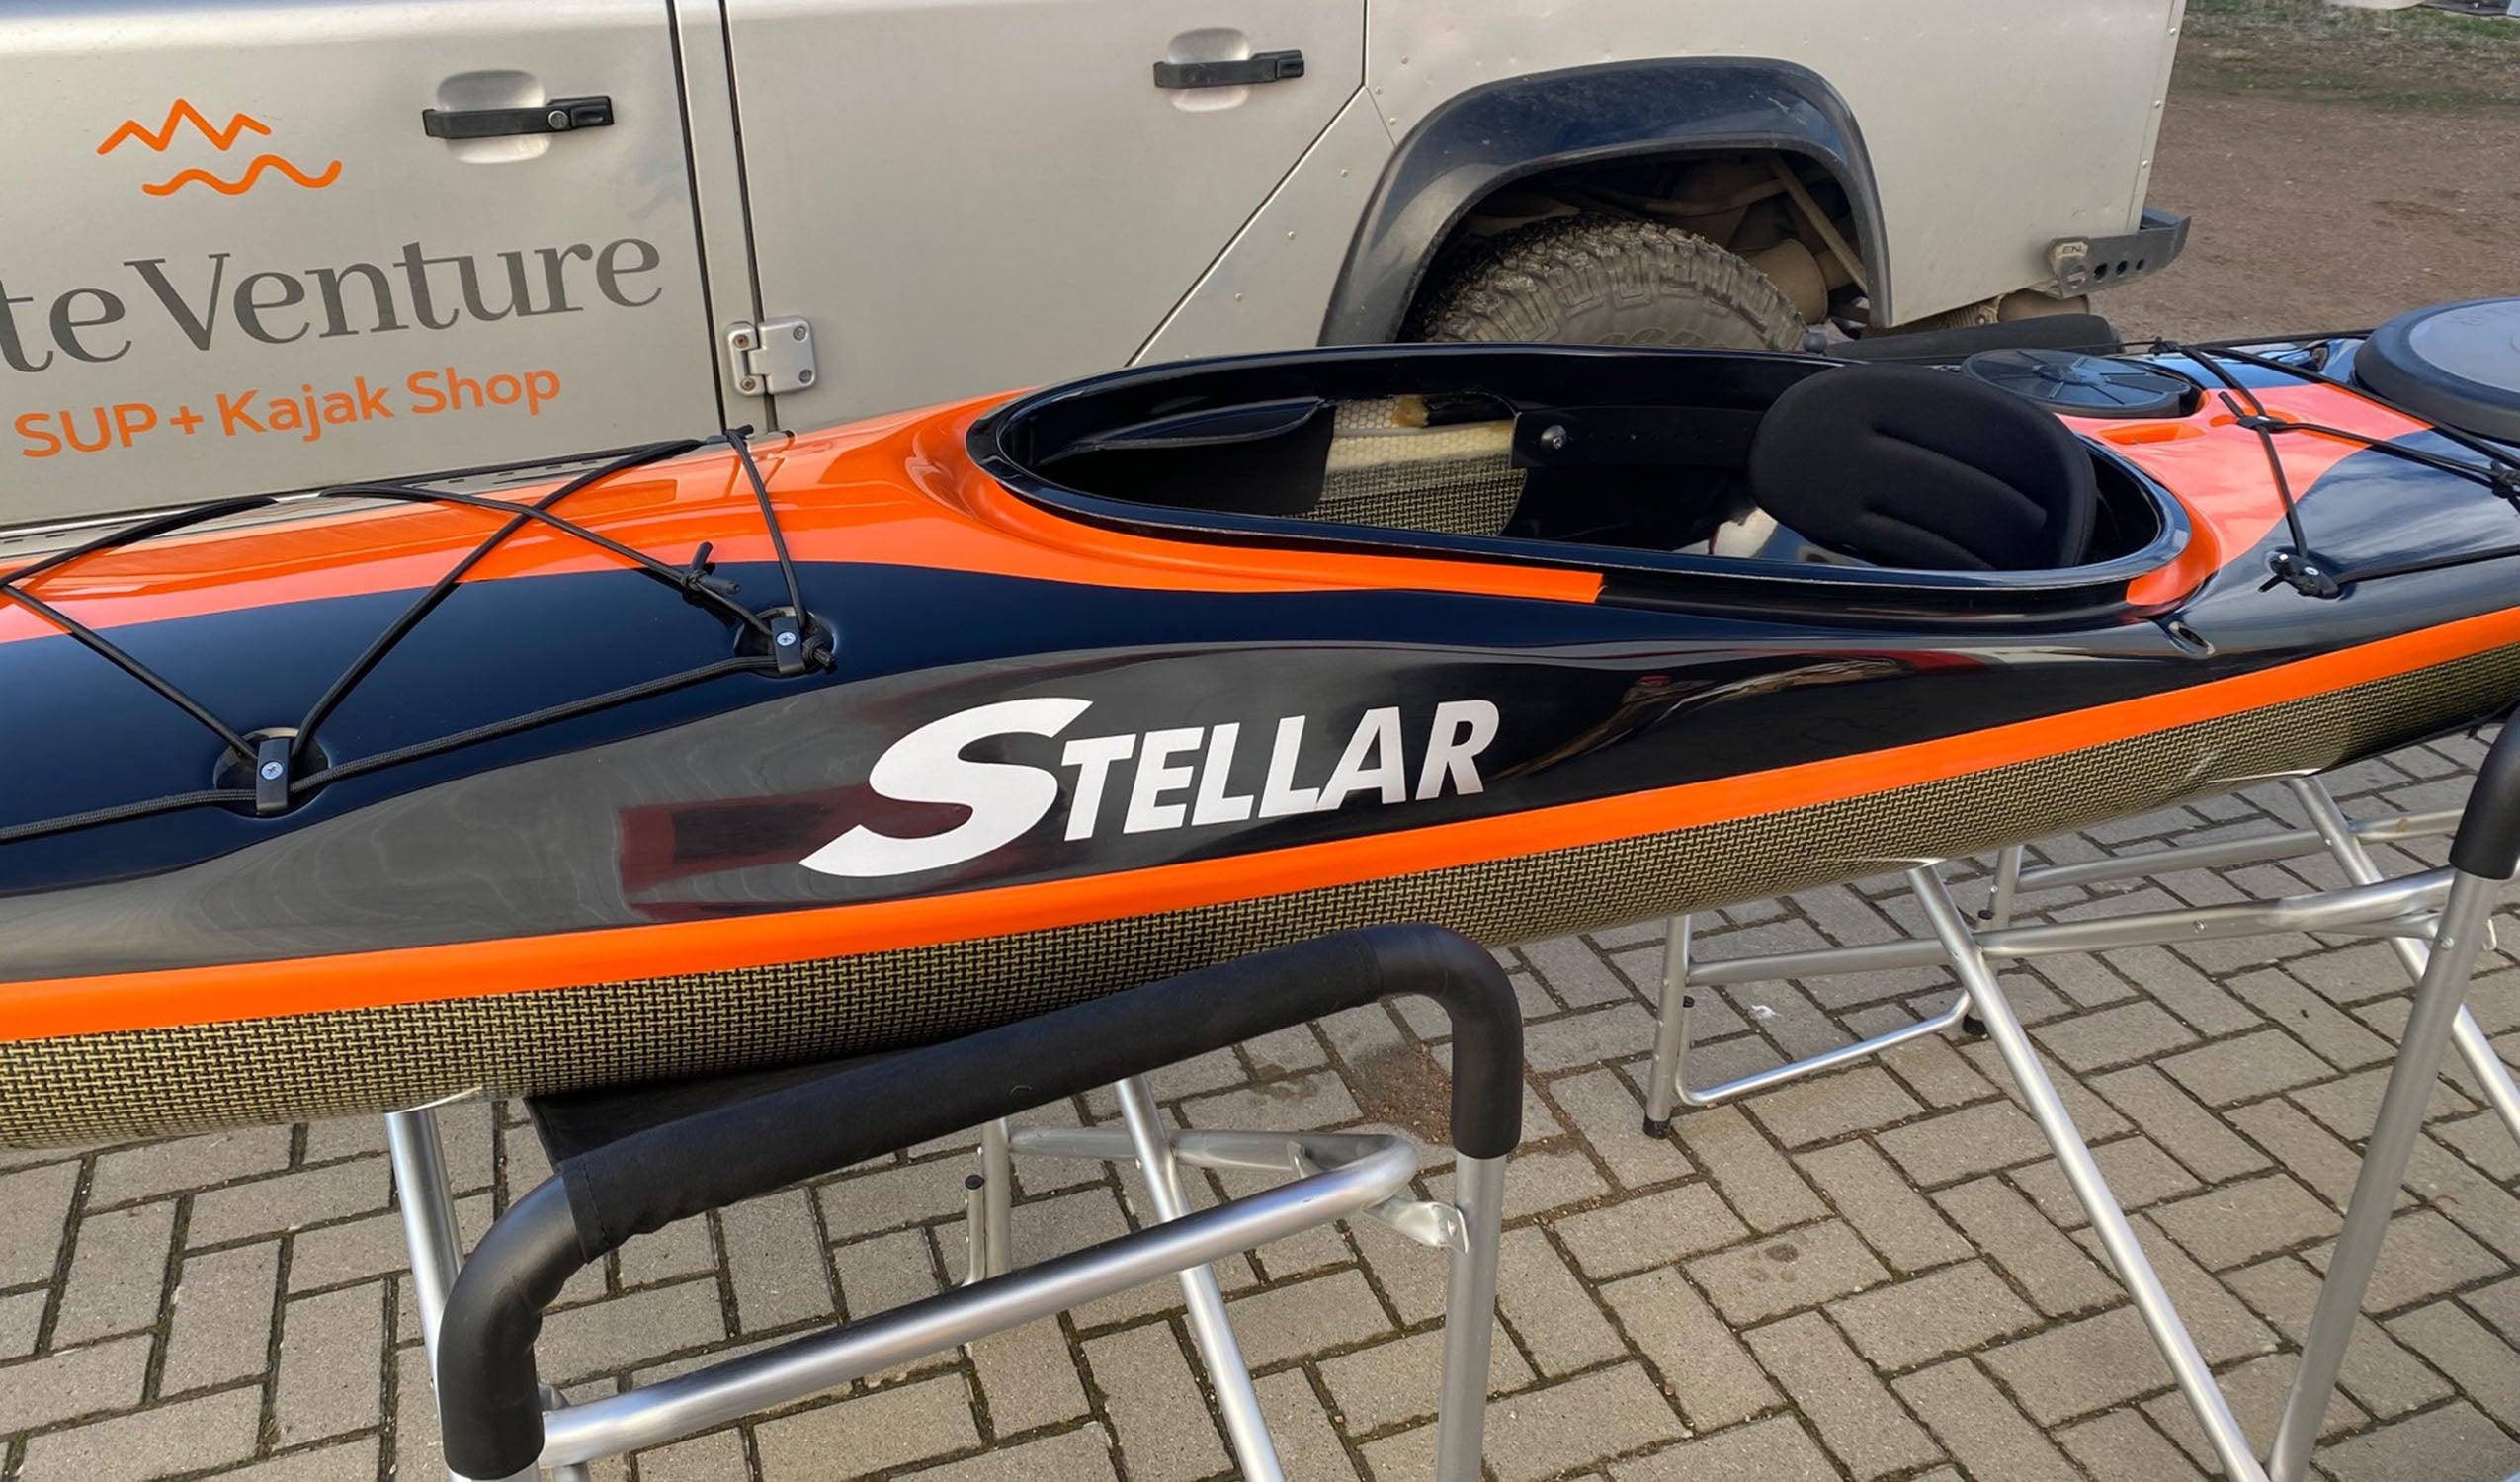 Produktbild von Kajak " SILV Multisport-schwarz orange " der Marke STELLAR Lightweight für 3290.00 €. Erhältlich online bei Lite Venture ( www.liteventure.de )